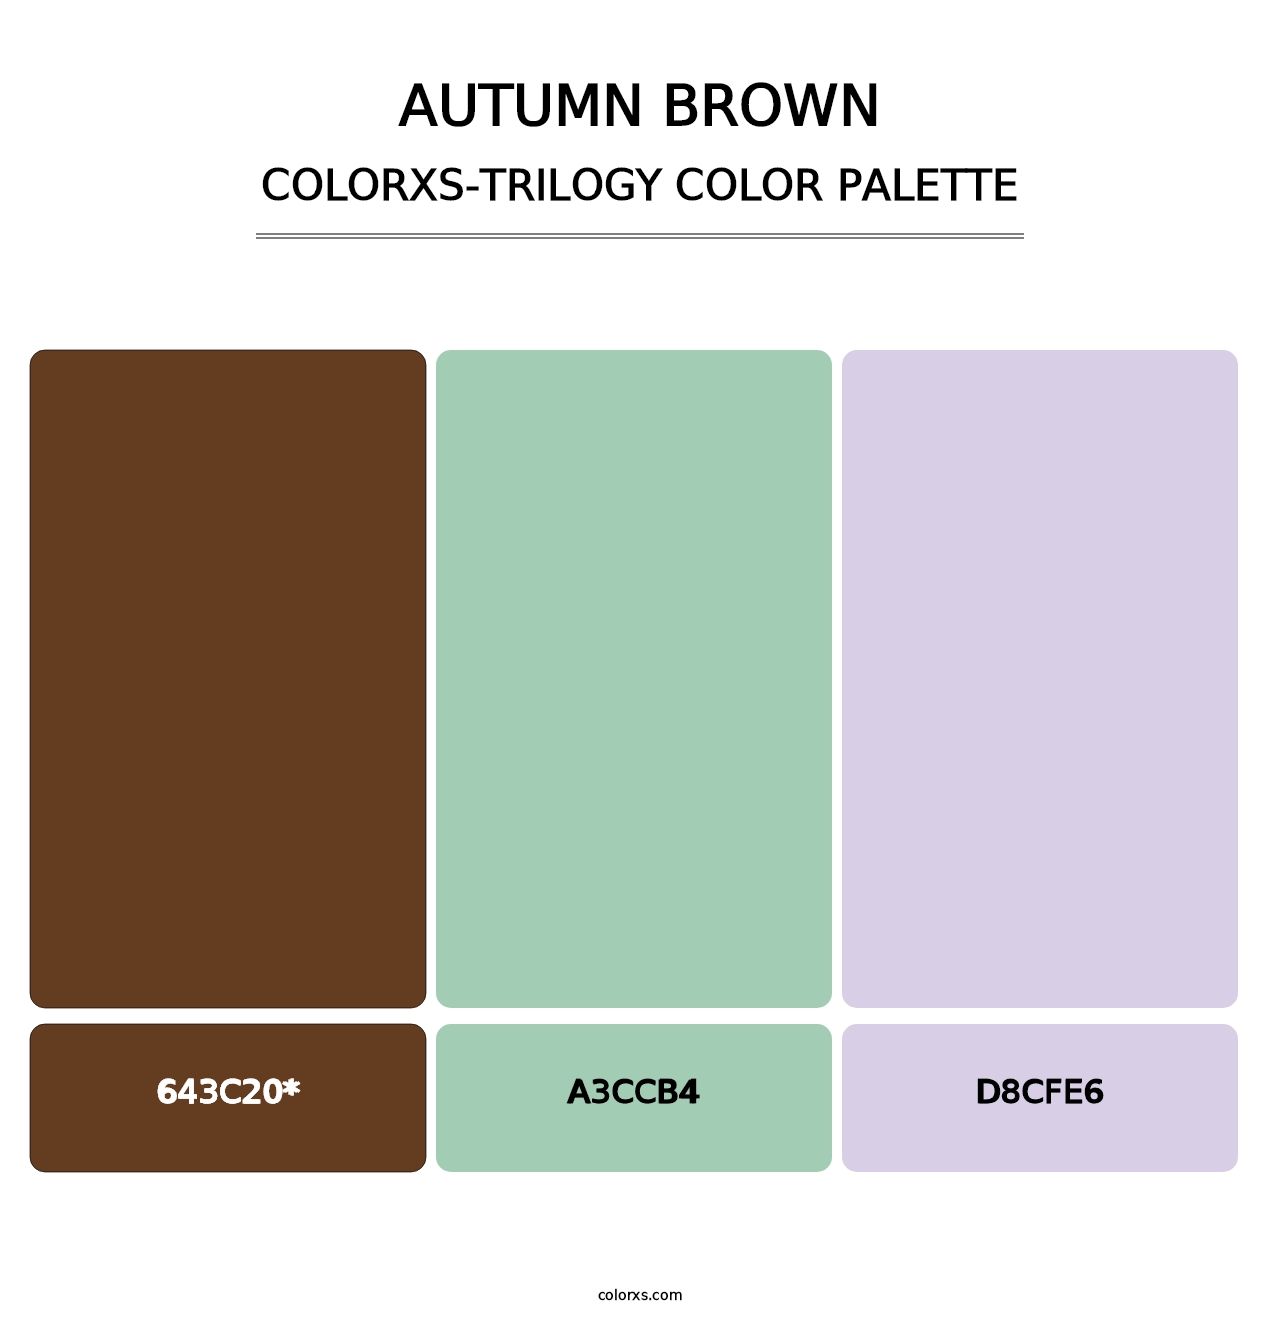 Autumn Brown - Colorxs Trilogy Palette